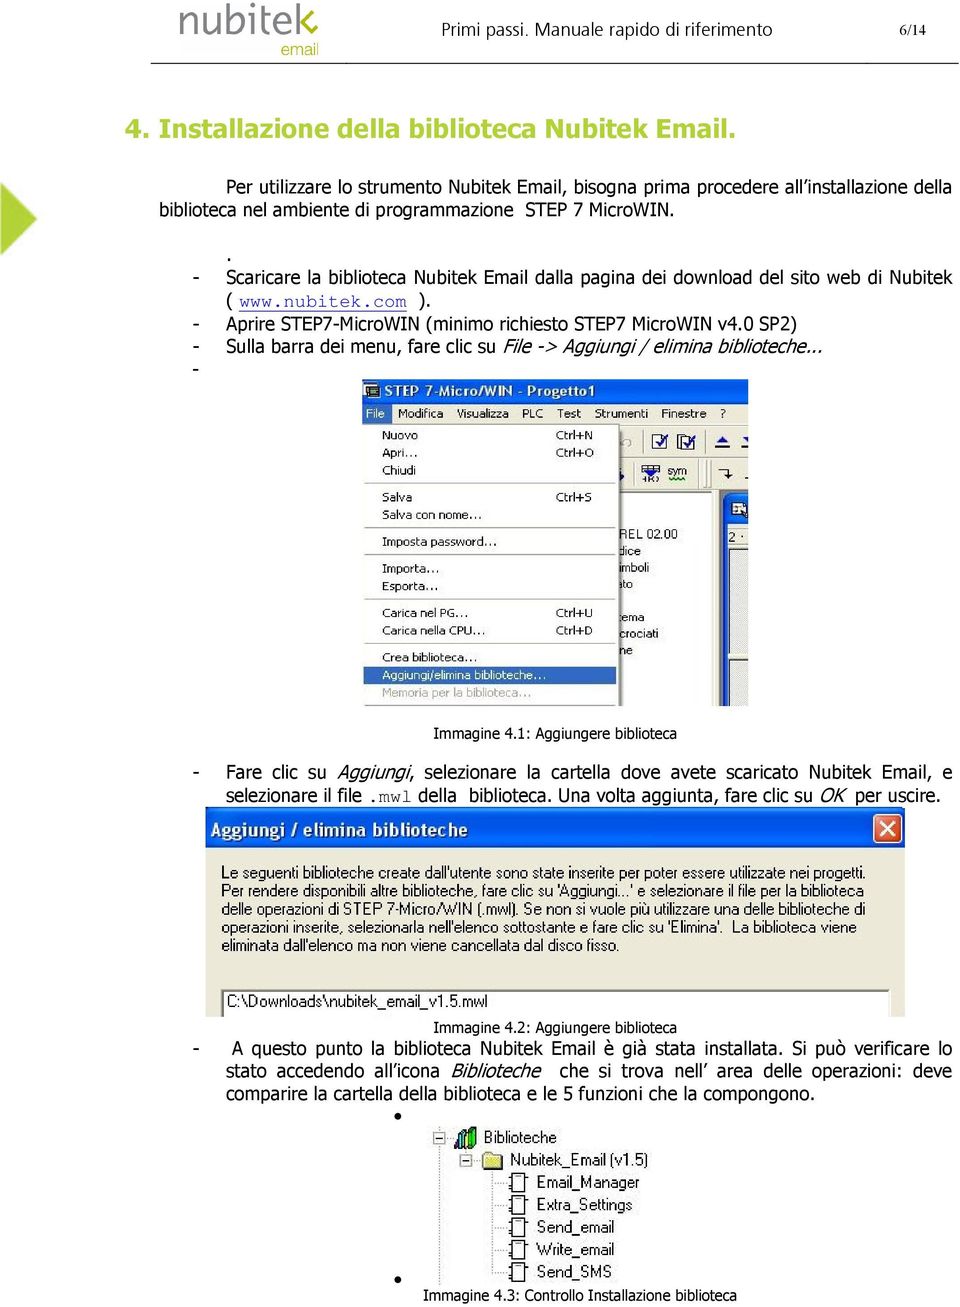 . - Scaricare la biblioteca Nubitek Email dalla pagina dei download del sito web di Nubitek ( www.nubitek.com ). - Aprire STEP7-MicroWIN (minimo richiesto STEP7 MicroWIN v4.